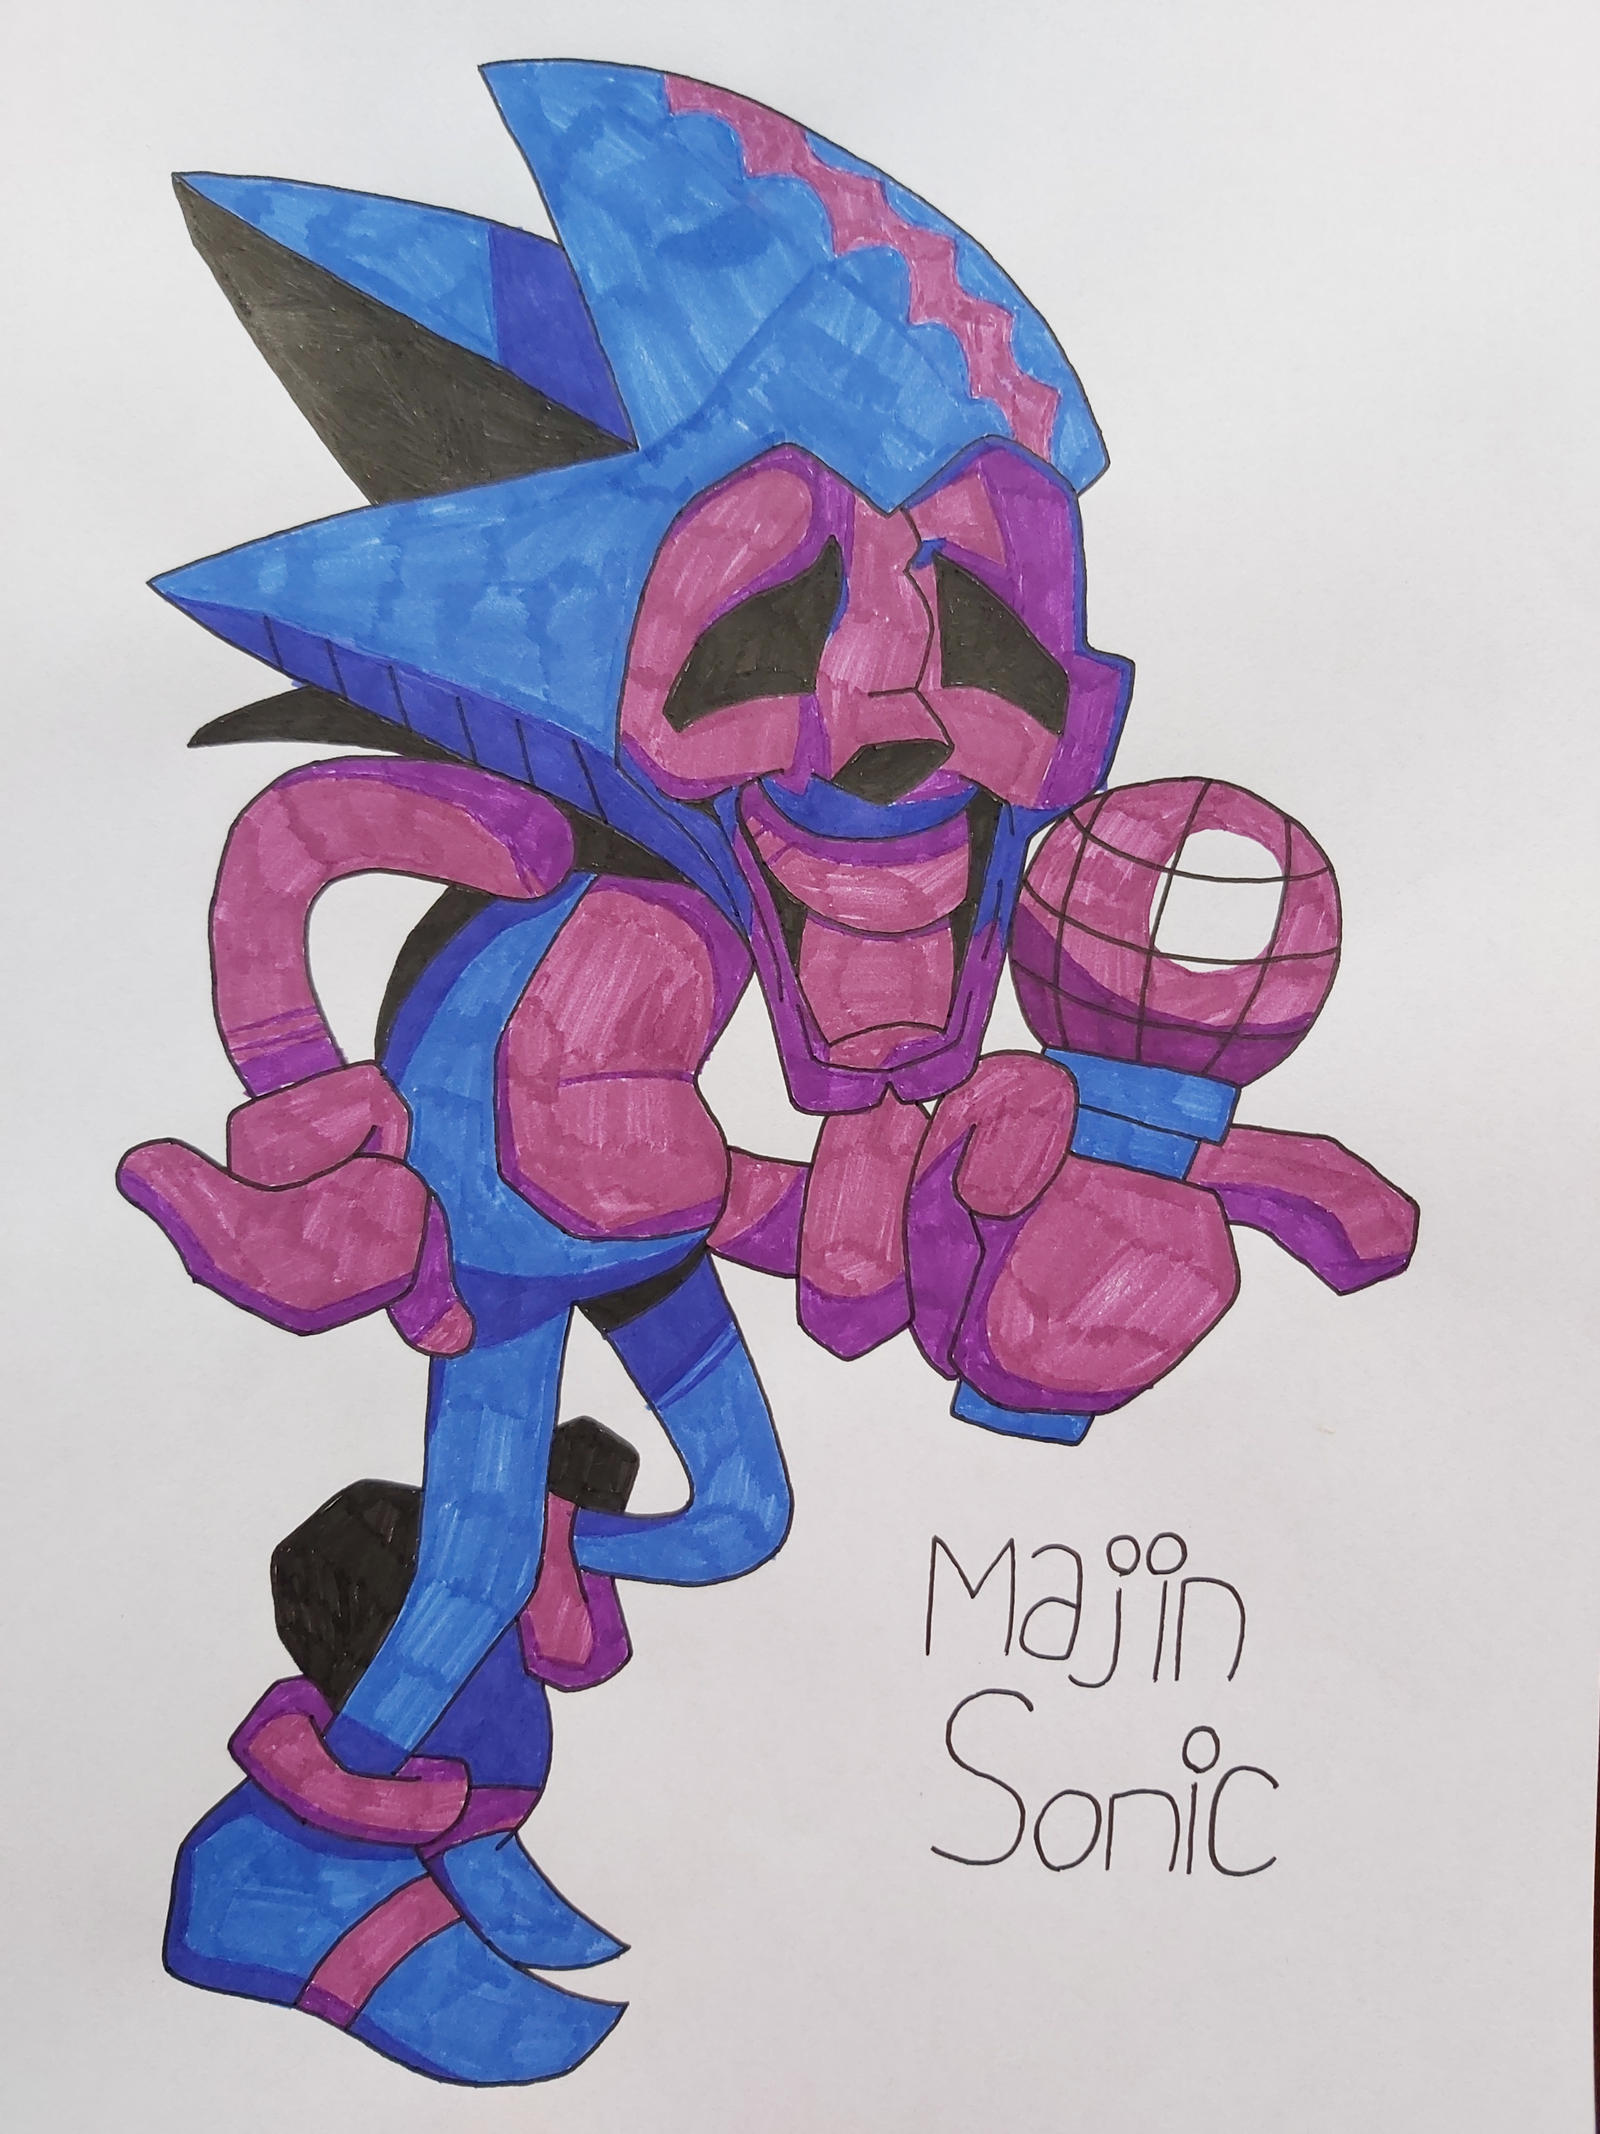 Majin Sonic fanart Re-draw by ColorArtAndBolb on DeviantArt